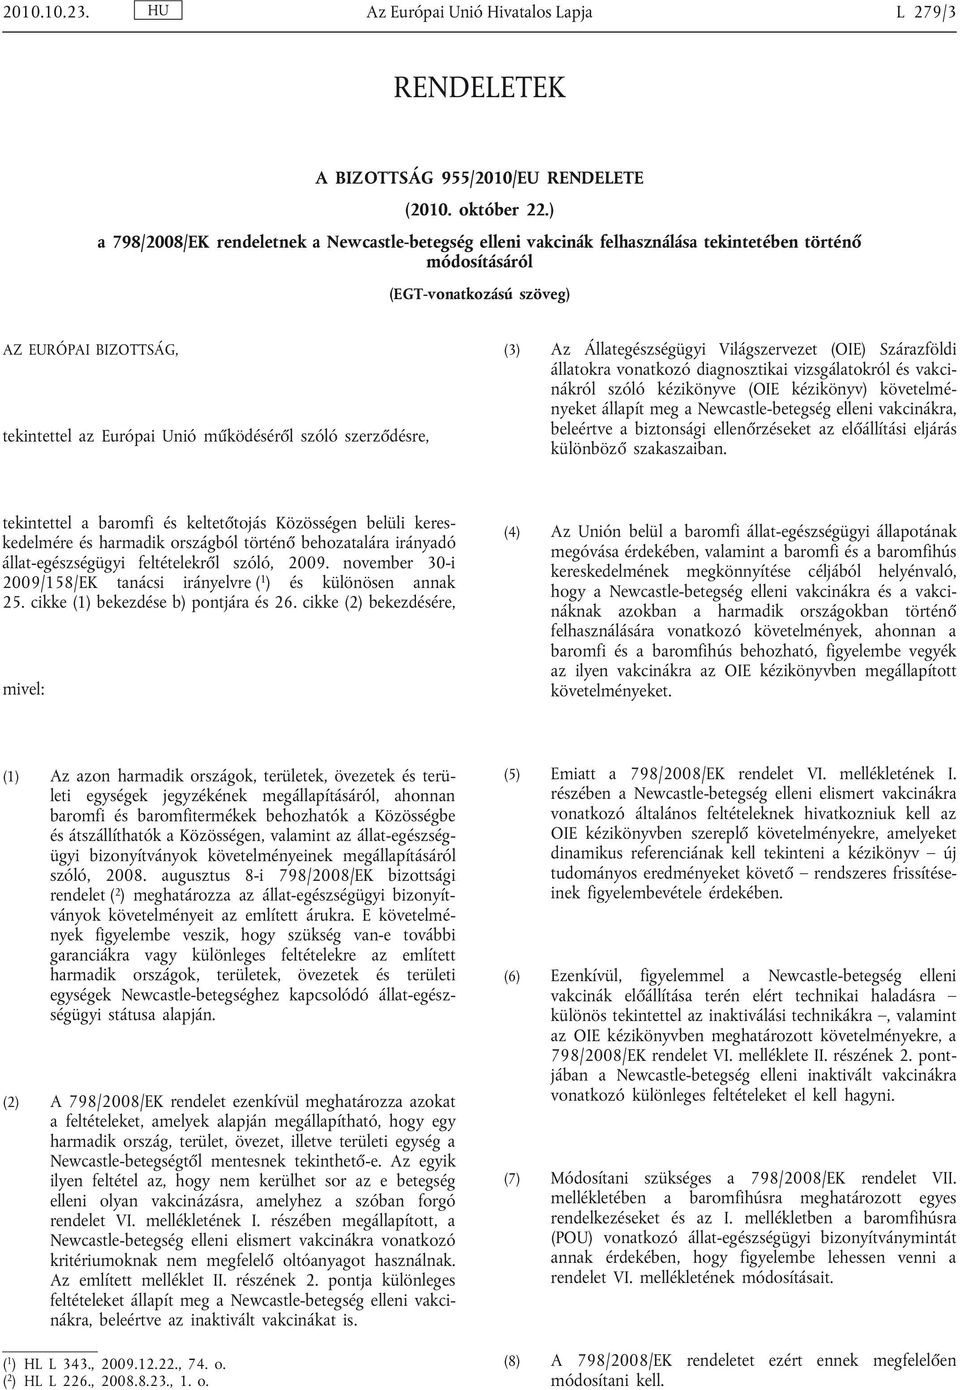 működéséről szóló szerződésre, (3) Az Állategészségügyi Világszervezet (OIE) Szárazföldi állatokra vonatkozó diagnosztikai vizsgálatokról és vakci nákról szóló kézikönyve (OIE kézikönyv) követelmé